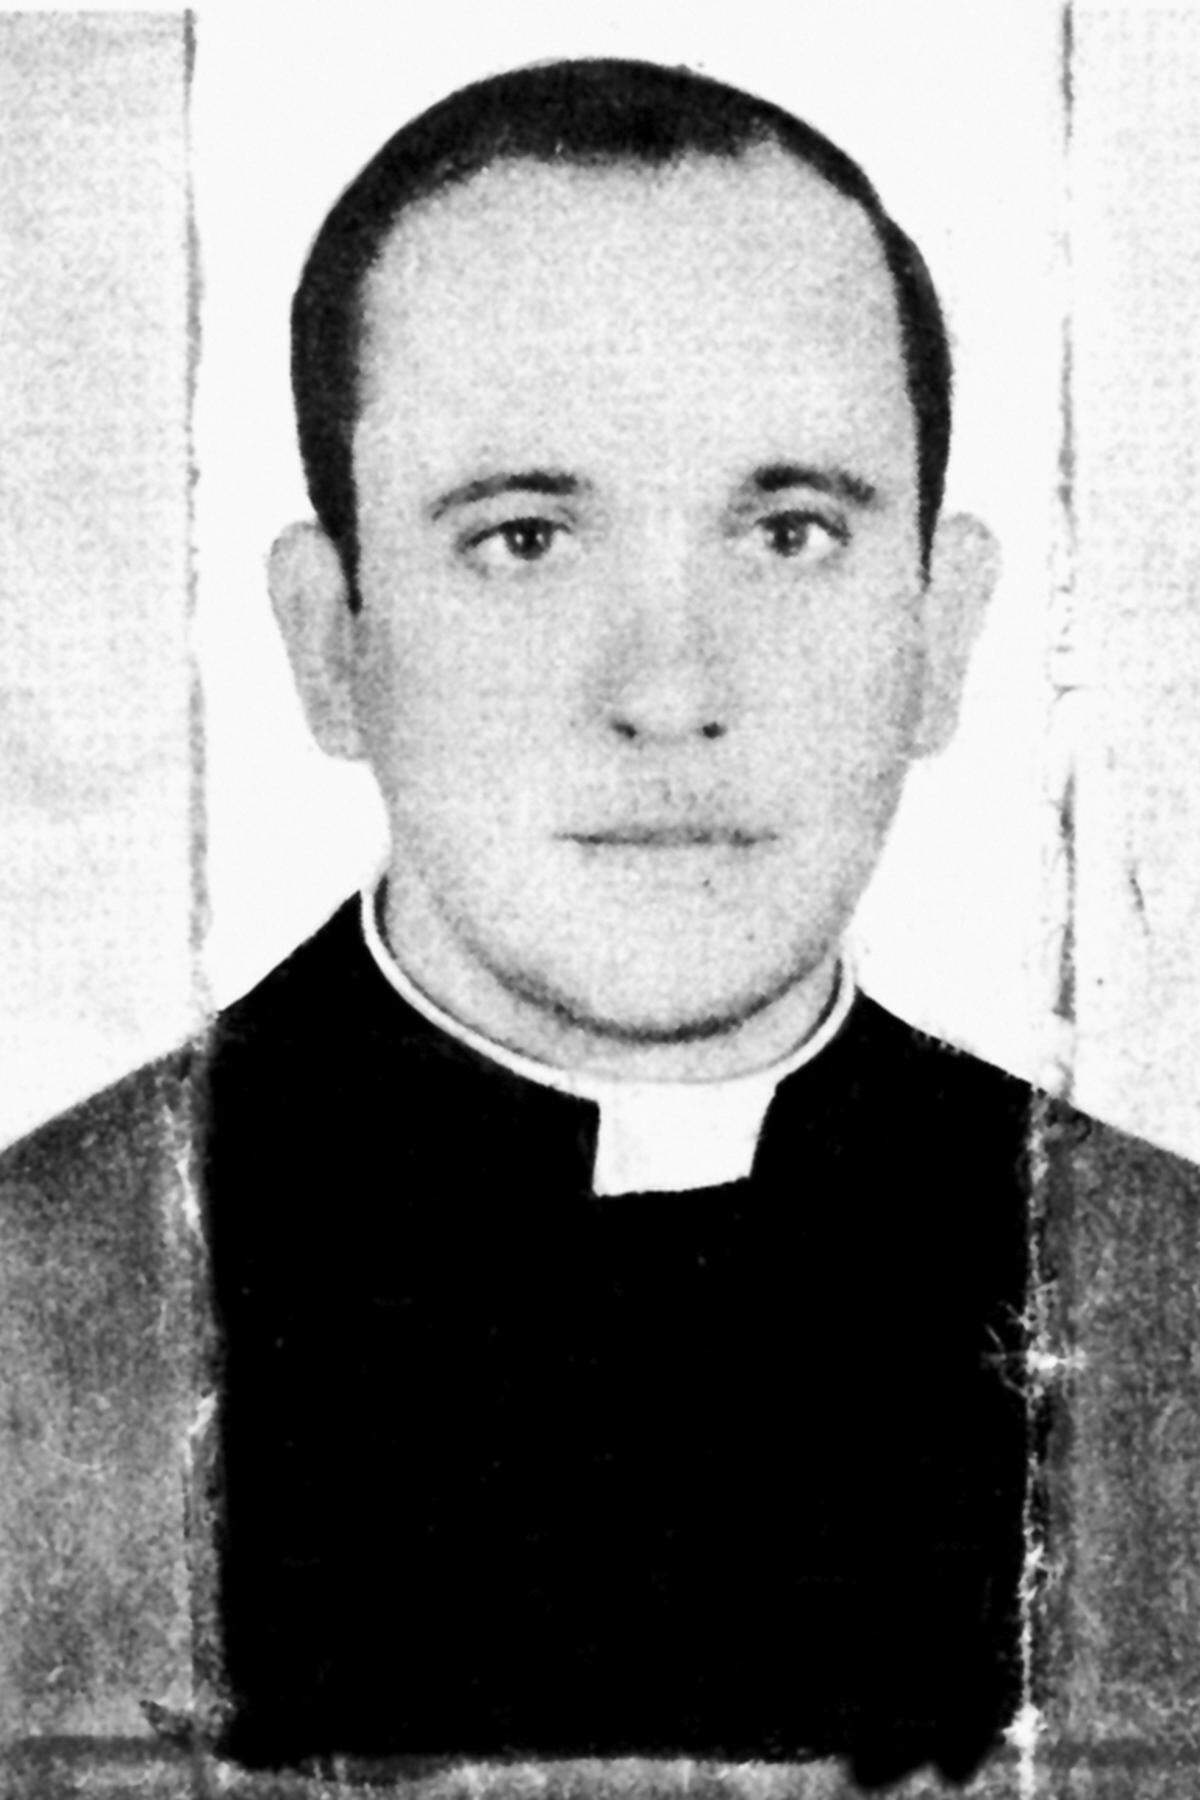 1969 zum Priester geweiht, begann er eine lange Karriere innerhalb seines Ordens, wo er es 1973 bereits zum Provinzial schaffte.